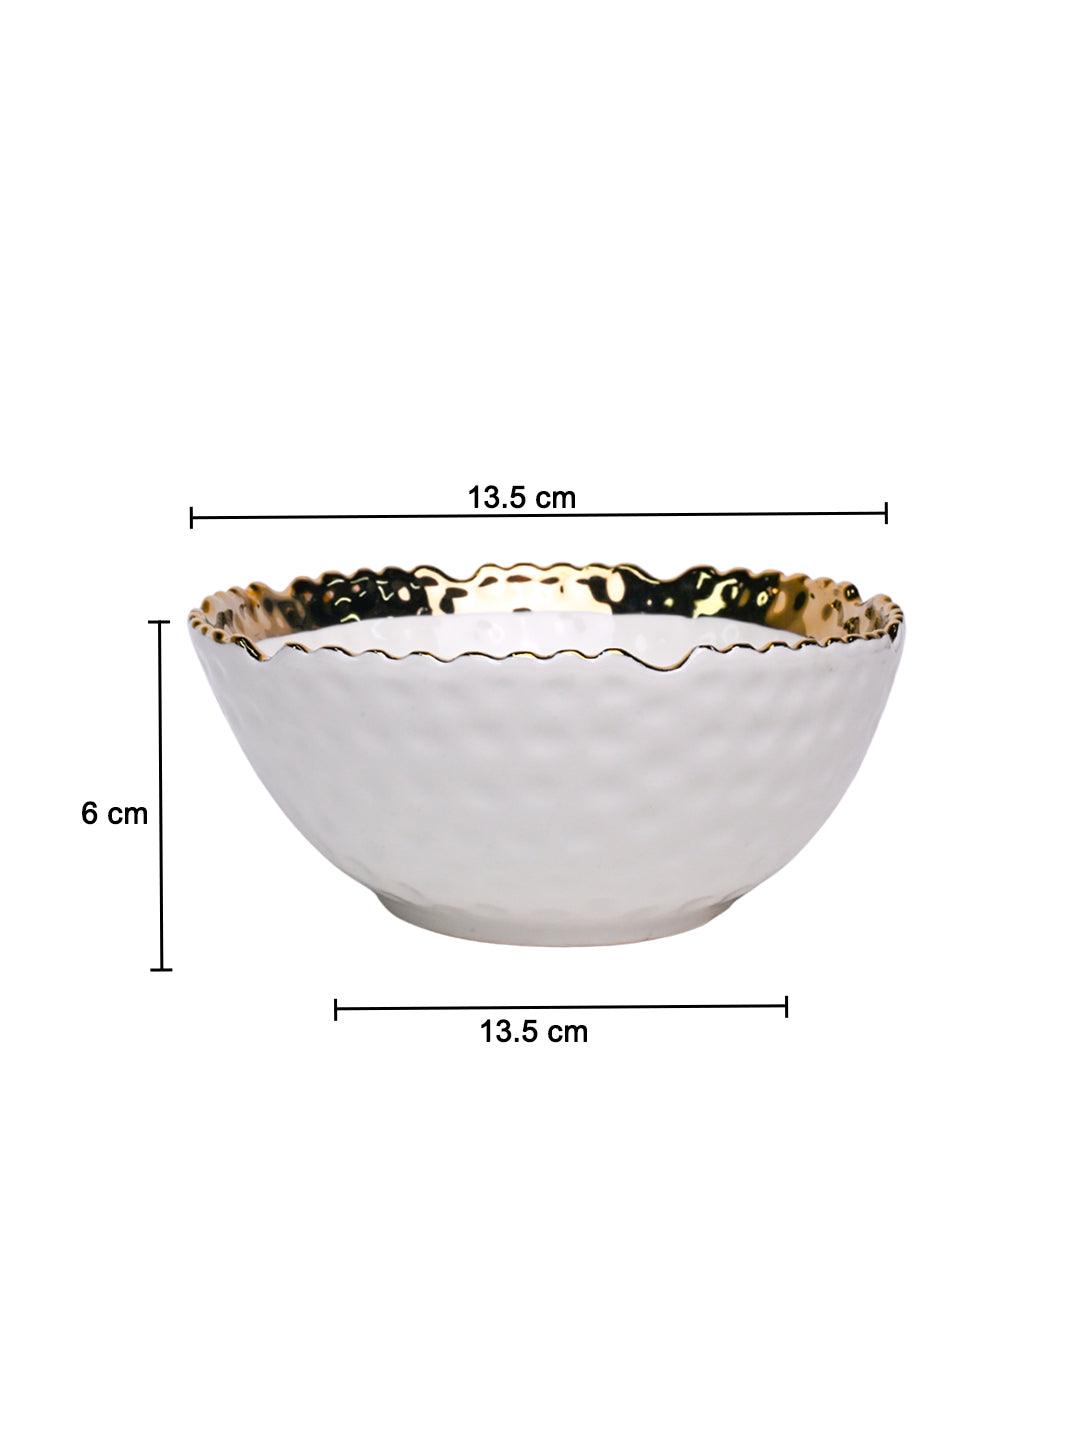 Antique Off White Ceramic Round Serving Dish - 14 x 14 x 6CM - MARKET 99